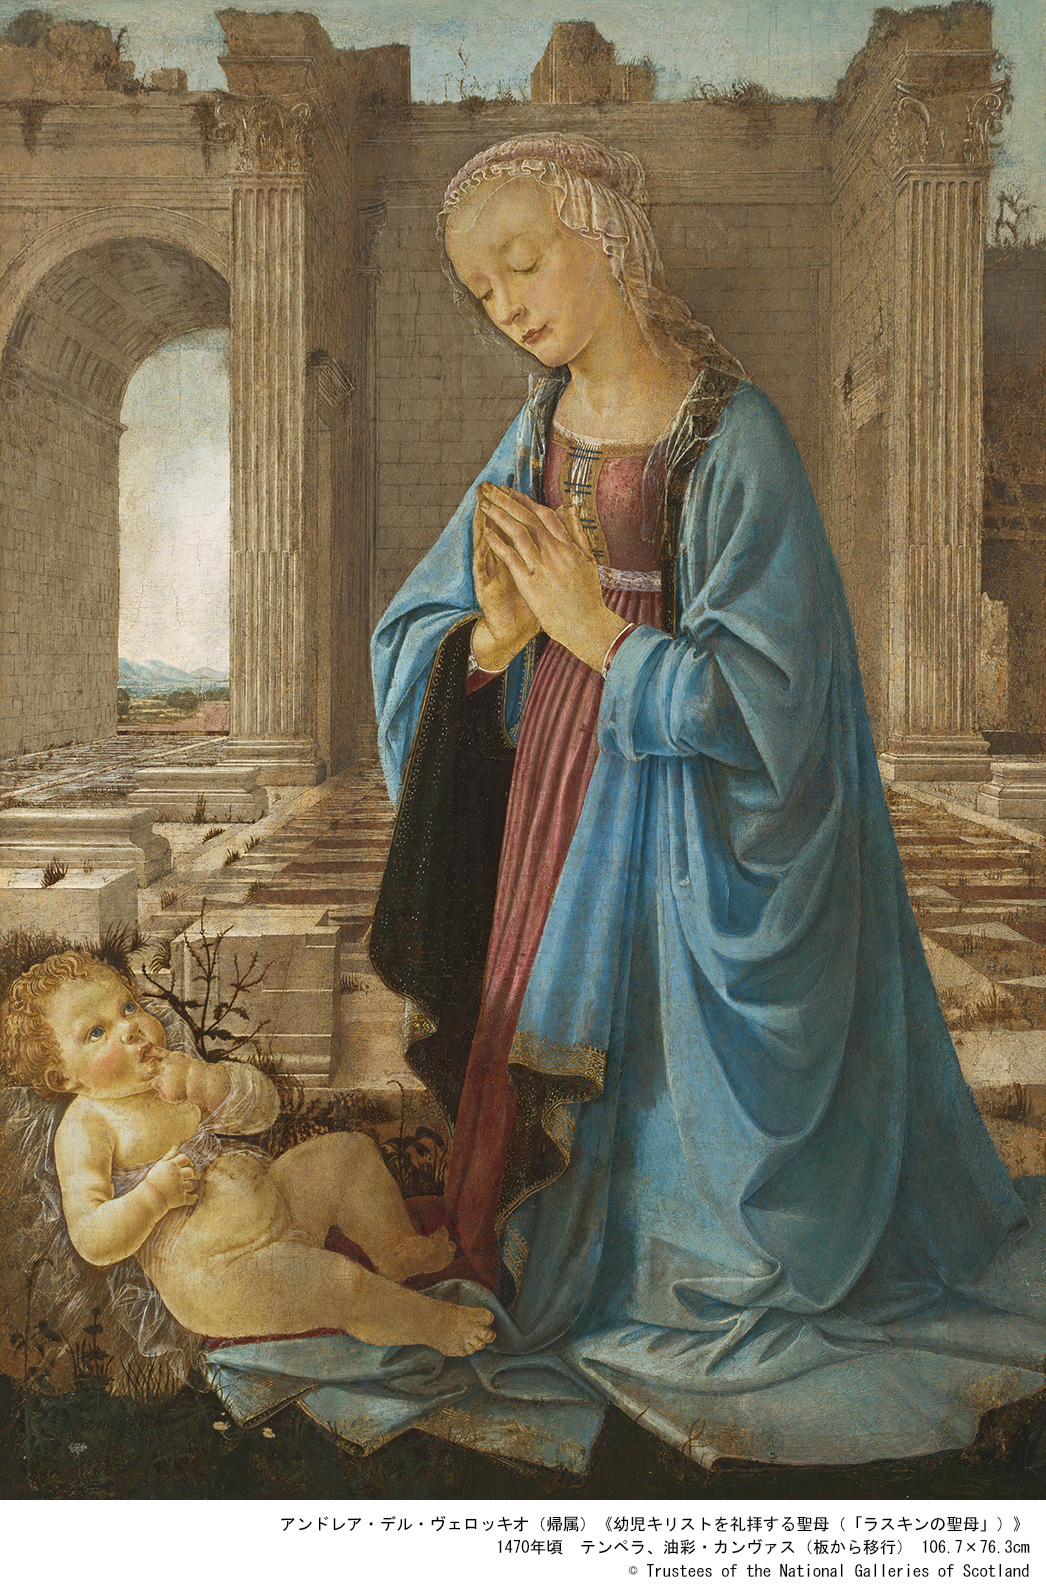 アンドレア・デル・ヴェロッキオ（帰属）「幼児キリストを礼拝する聖母（「ラスキンの聖母」）」　1470年頃 テンペラ、油彩・カンヴァス（板から移行）106.7×76.3cm (c) Trustees of the National Galleries of Scotland